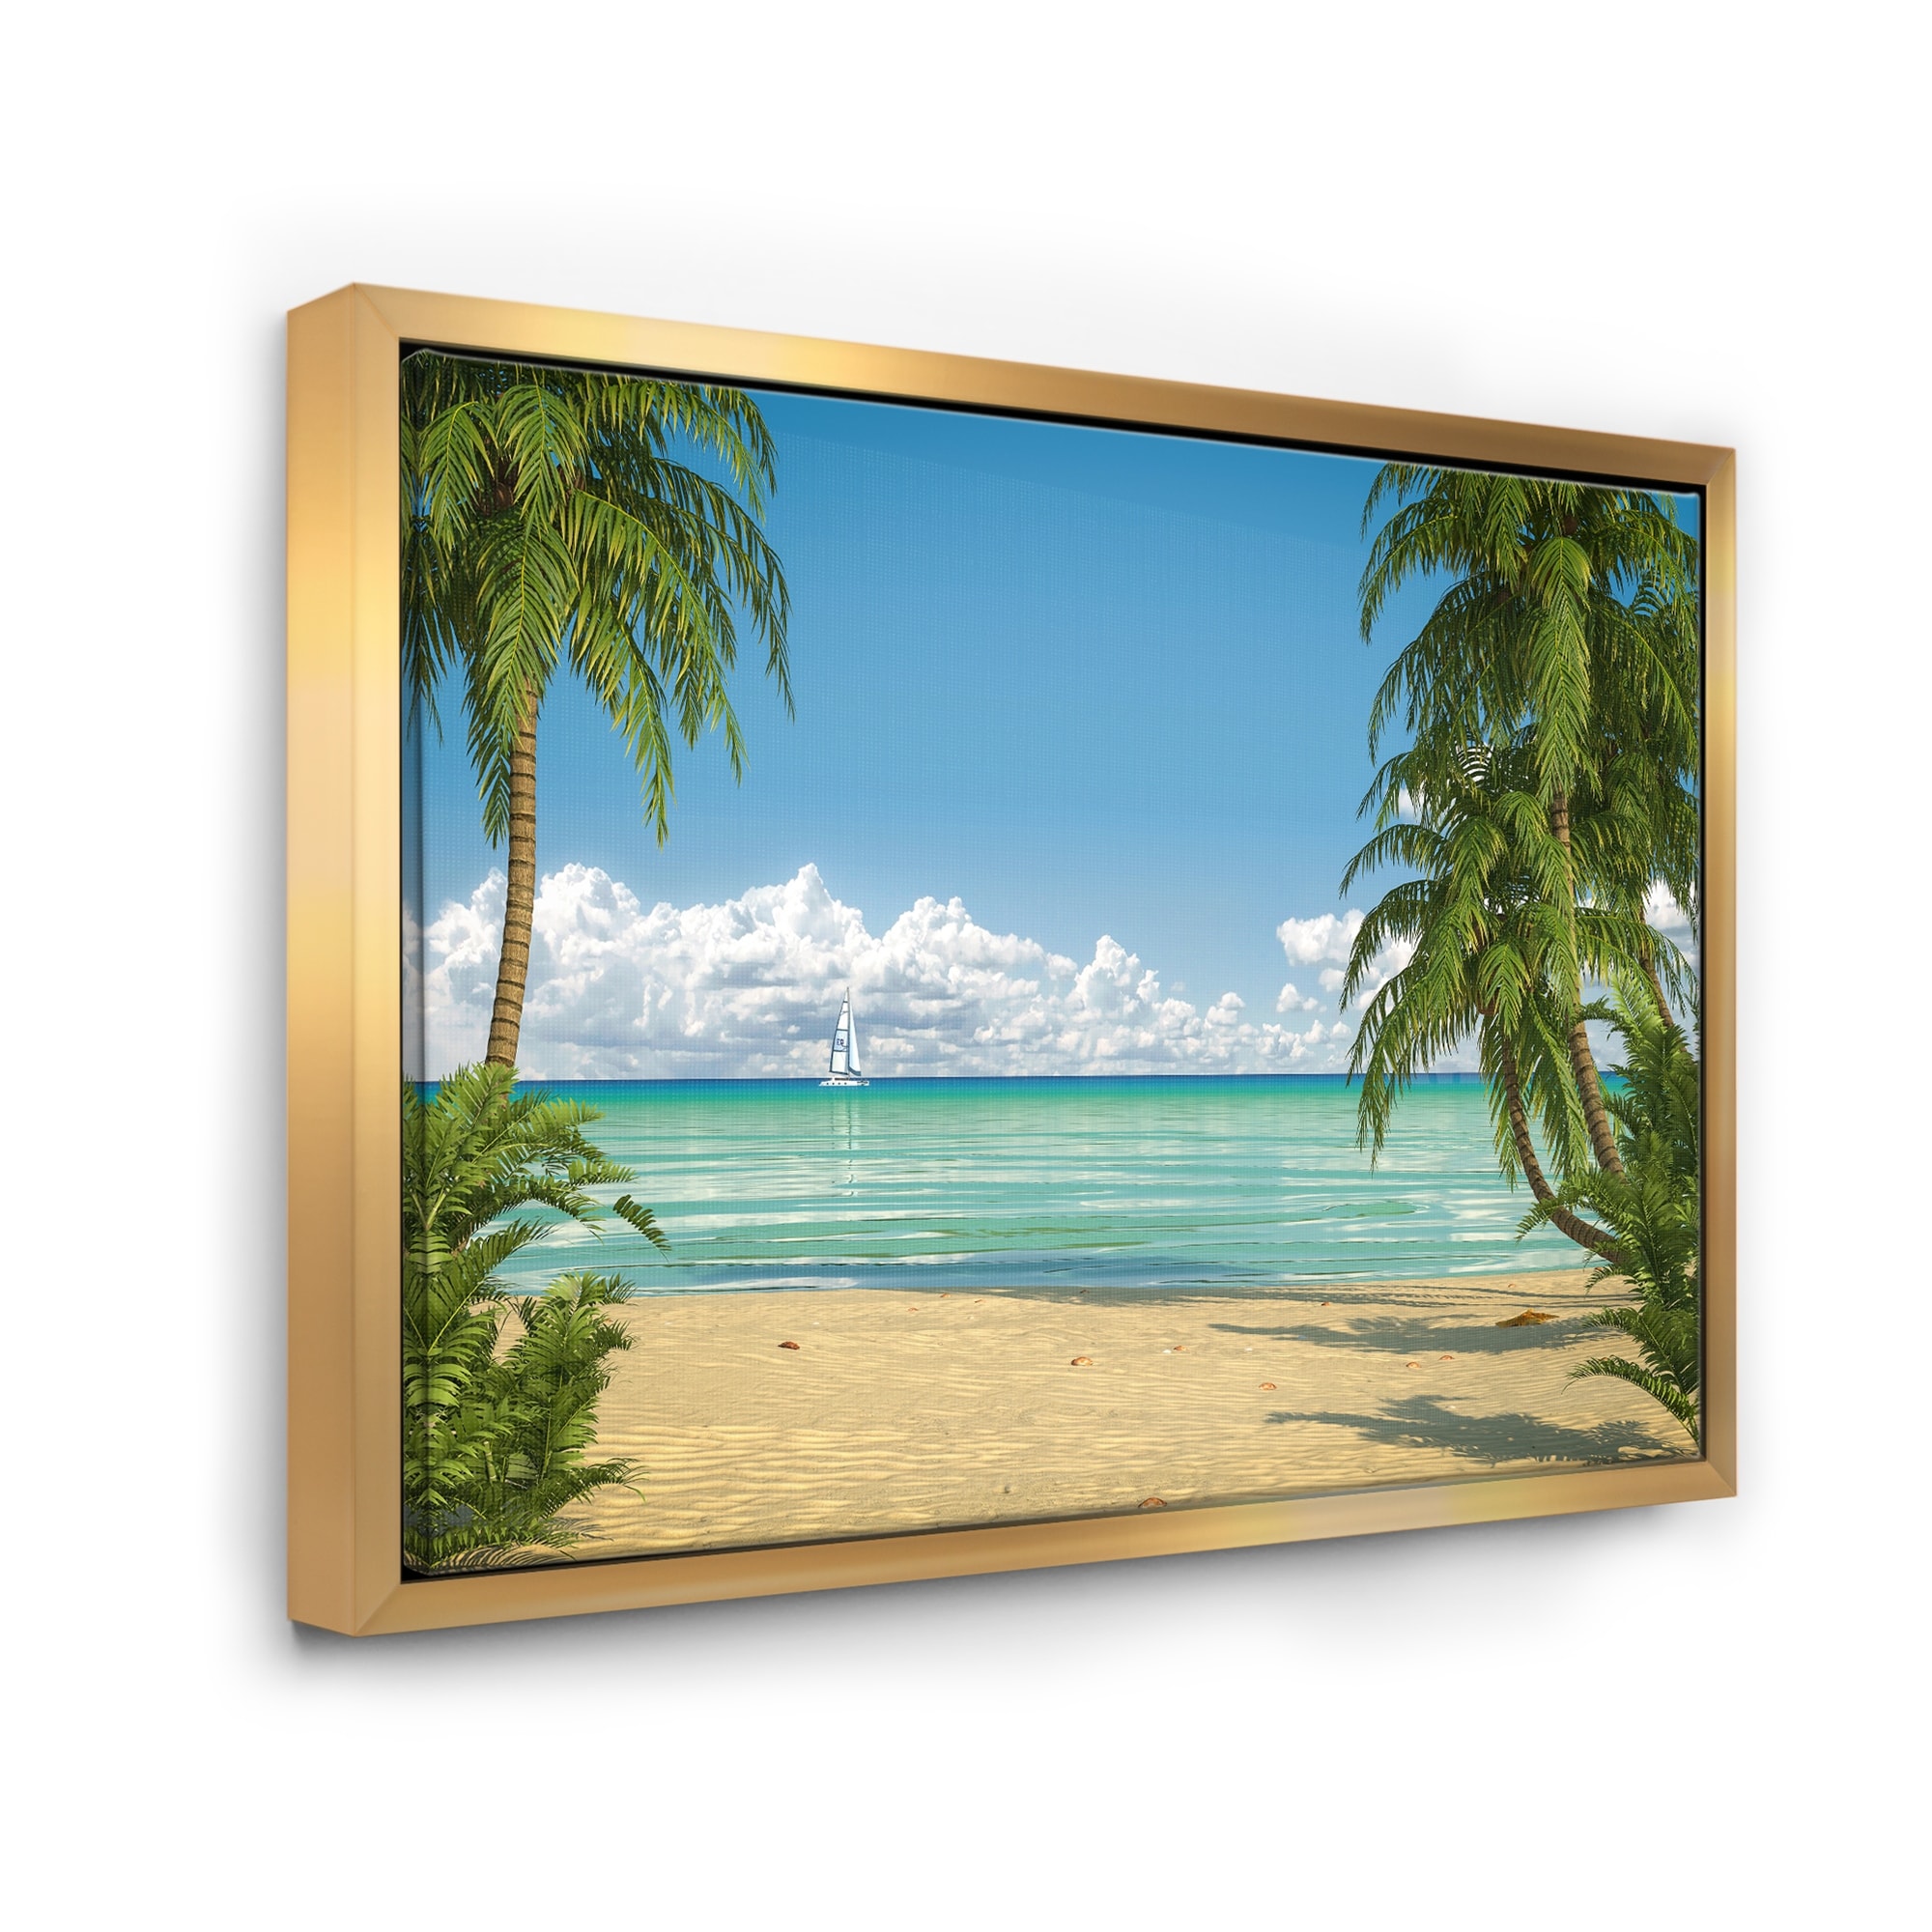 Blue Design Art PT10382-32-16 Tropical Beach with Palm Shadows-Large Seashore Canvas Print-32X16 32x16 